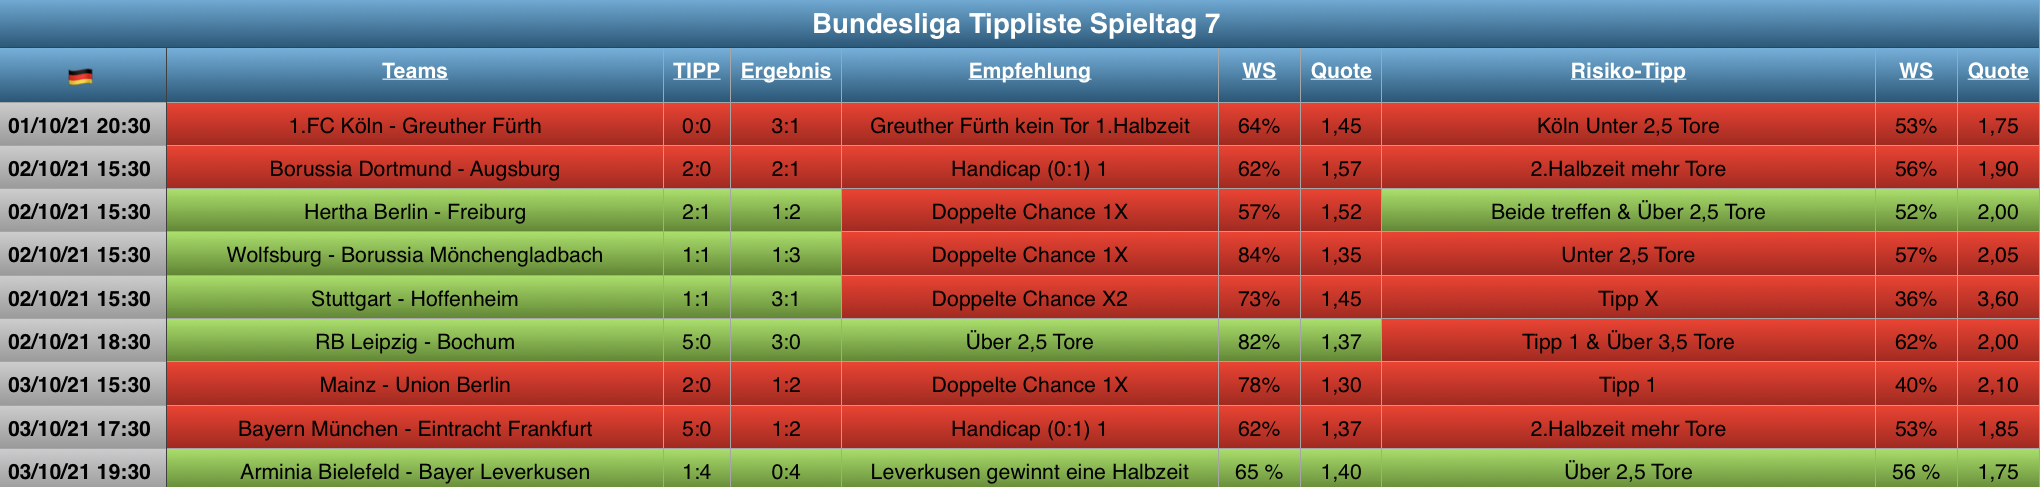 Auswertung Bundesliga Tippliste Spieltag 7 (2021)